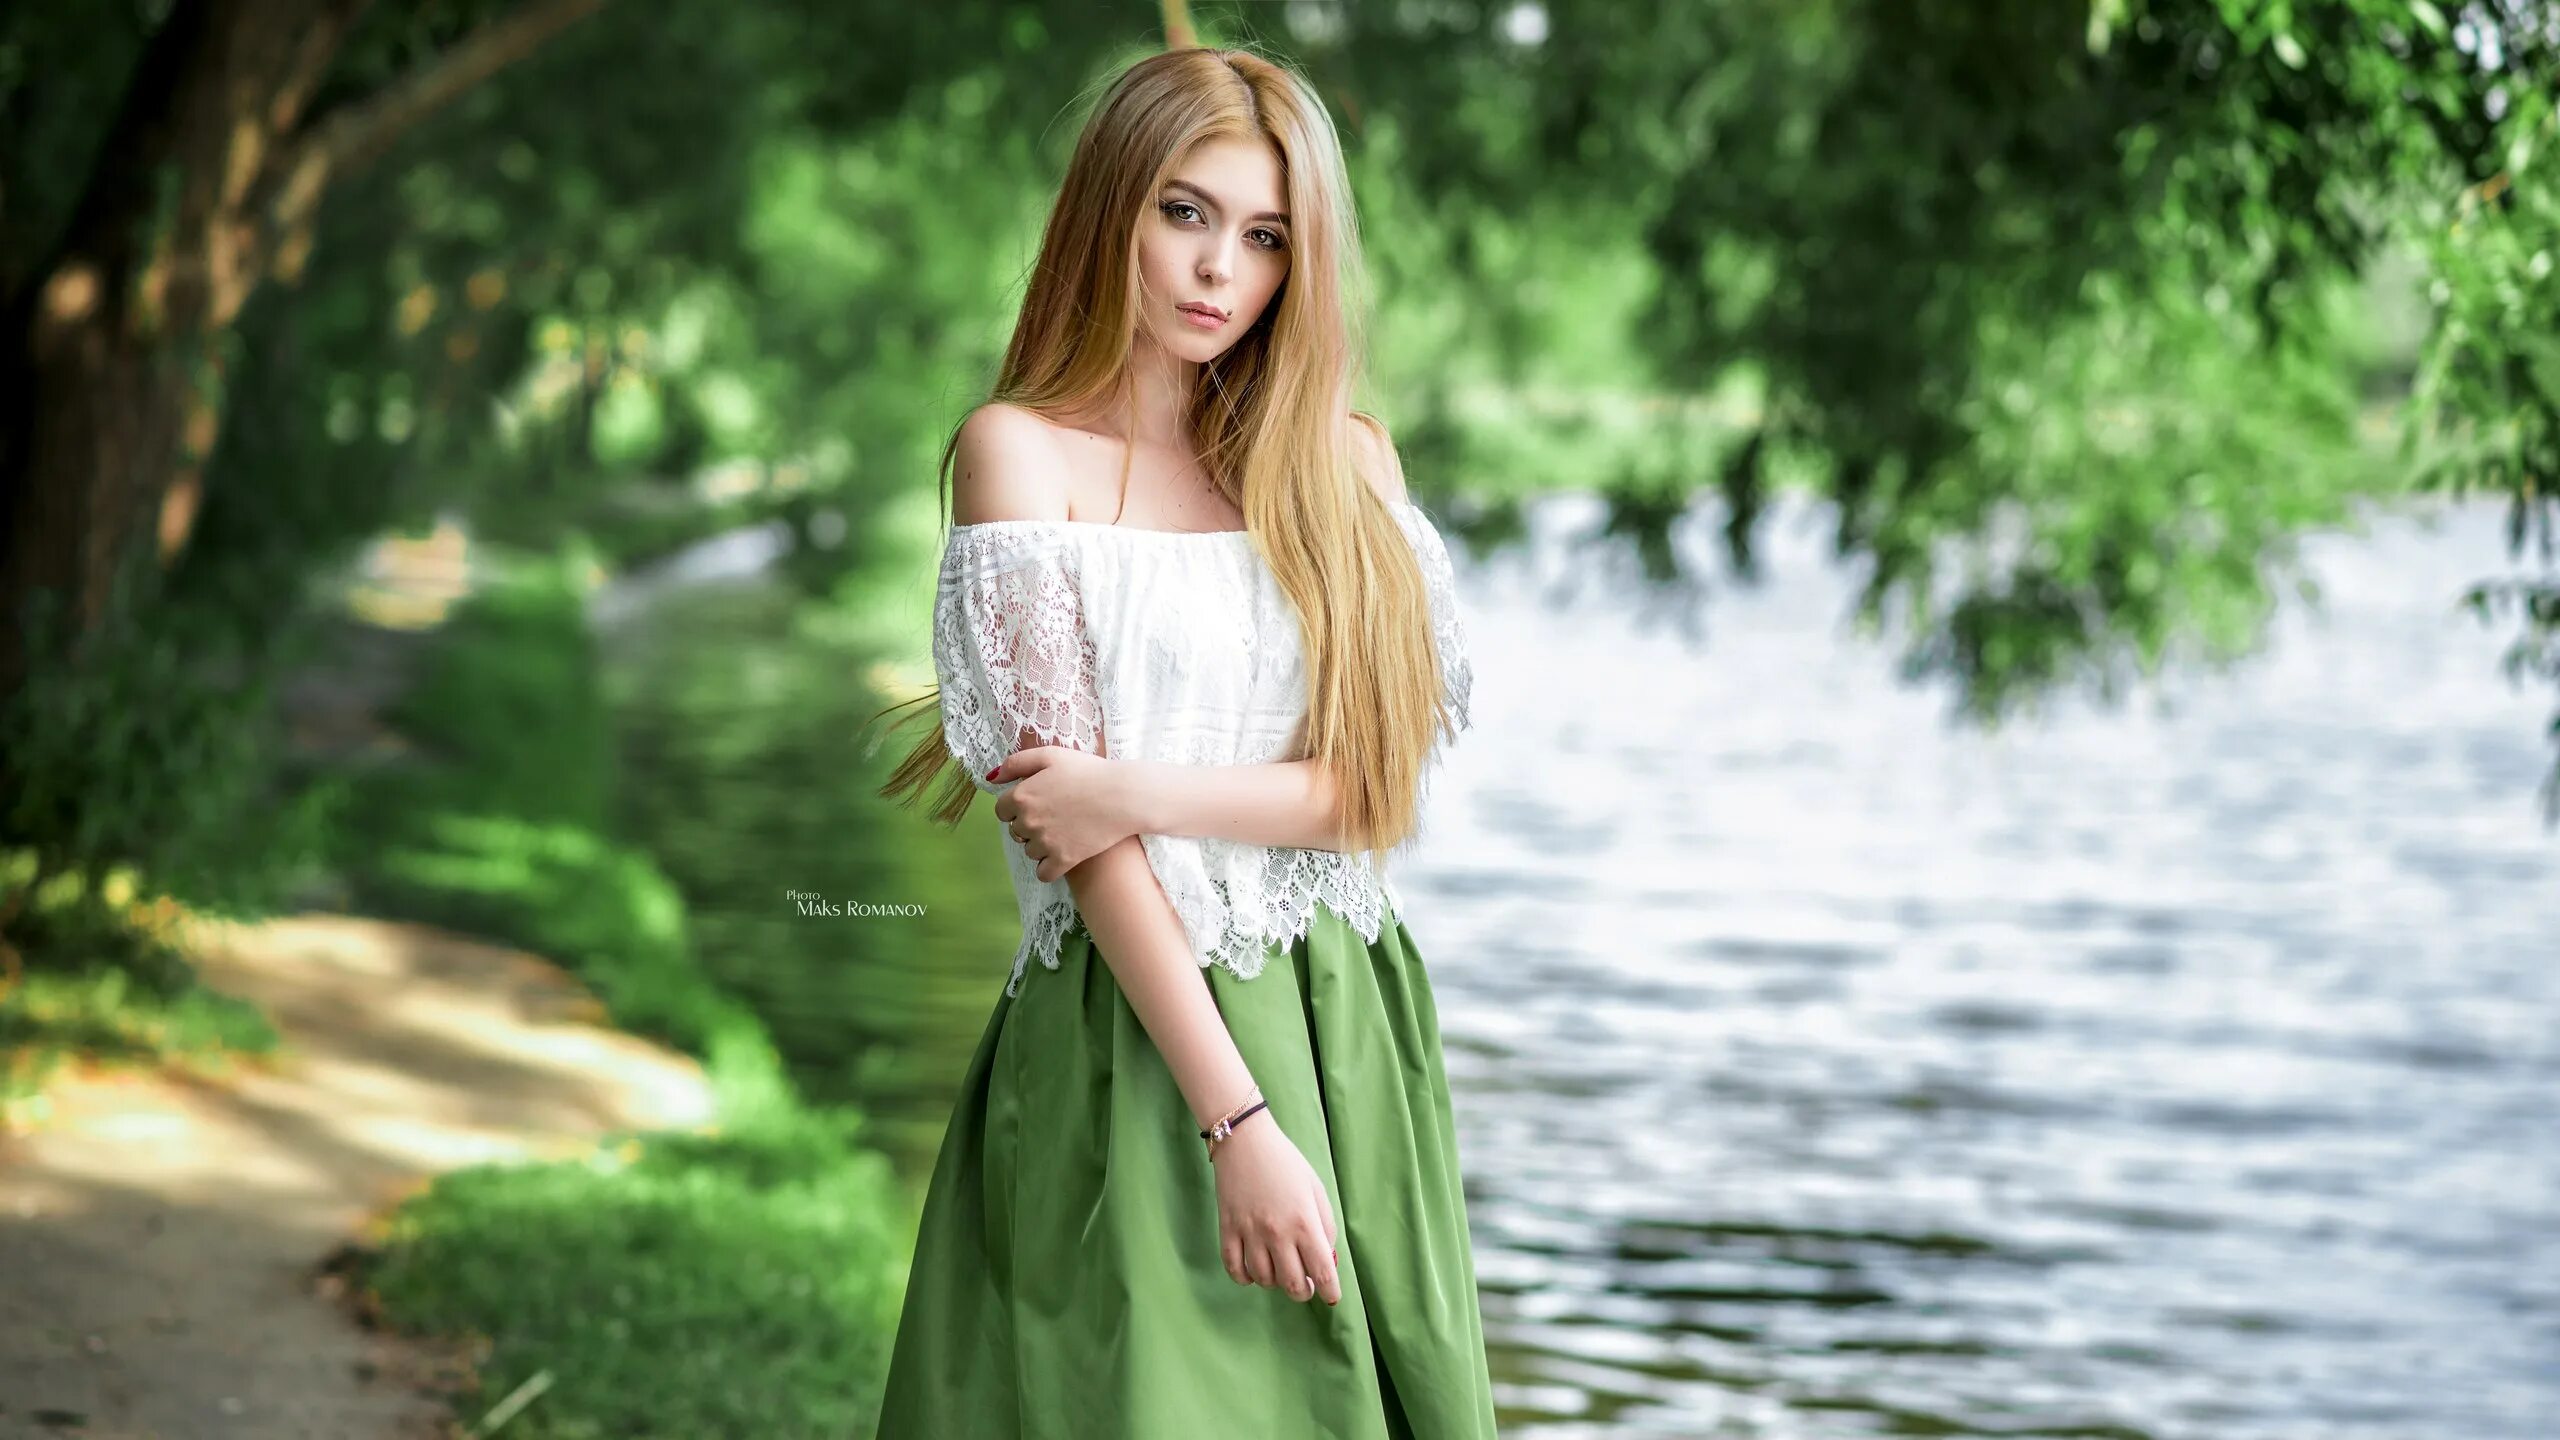 Длинные видео где девушки. Девушка Maksim Romanov. Красивые платья на природе.